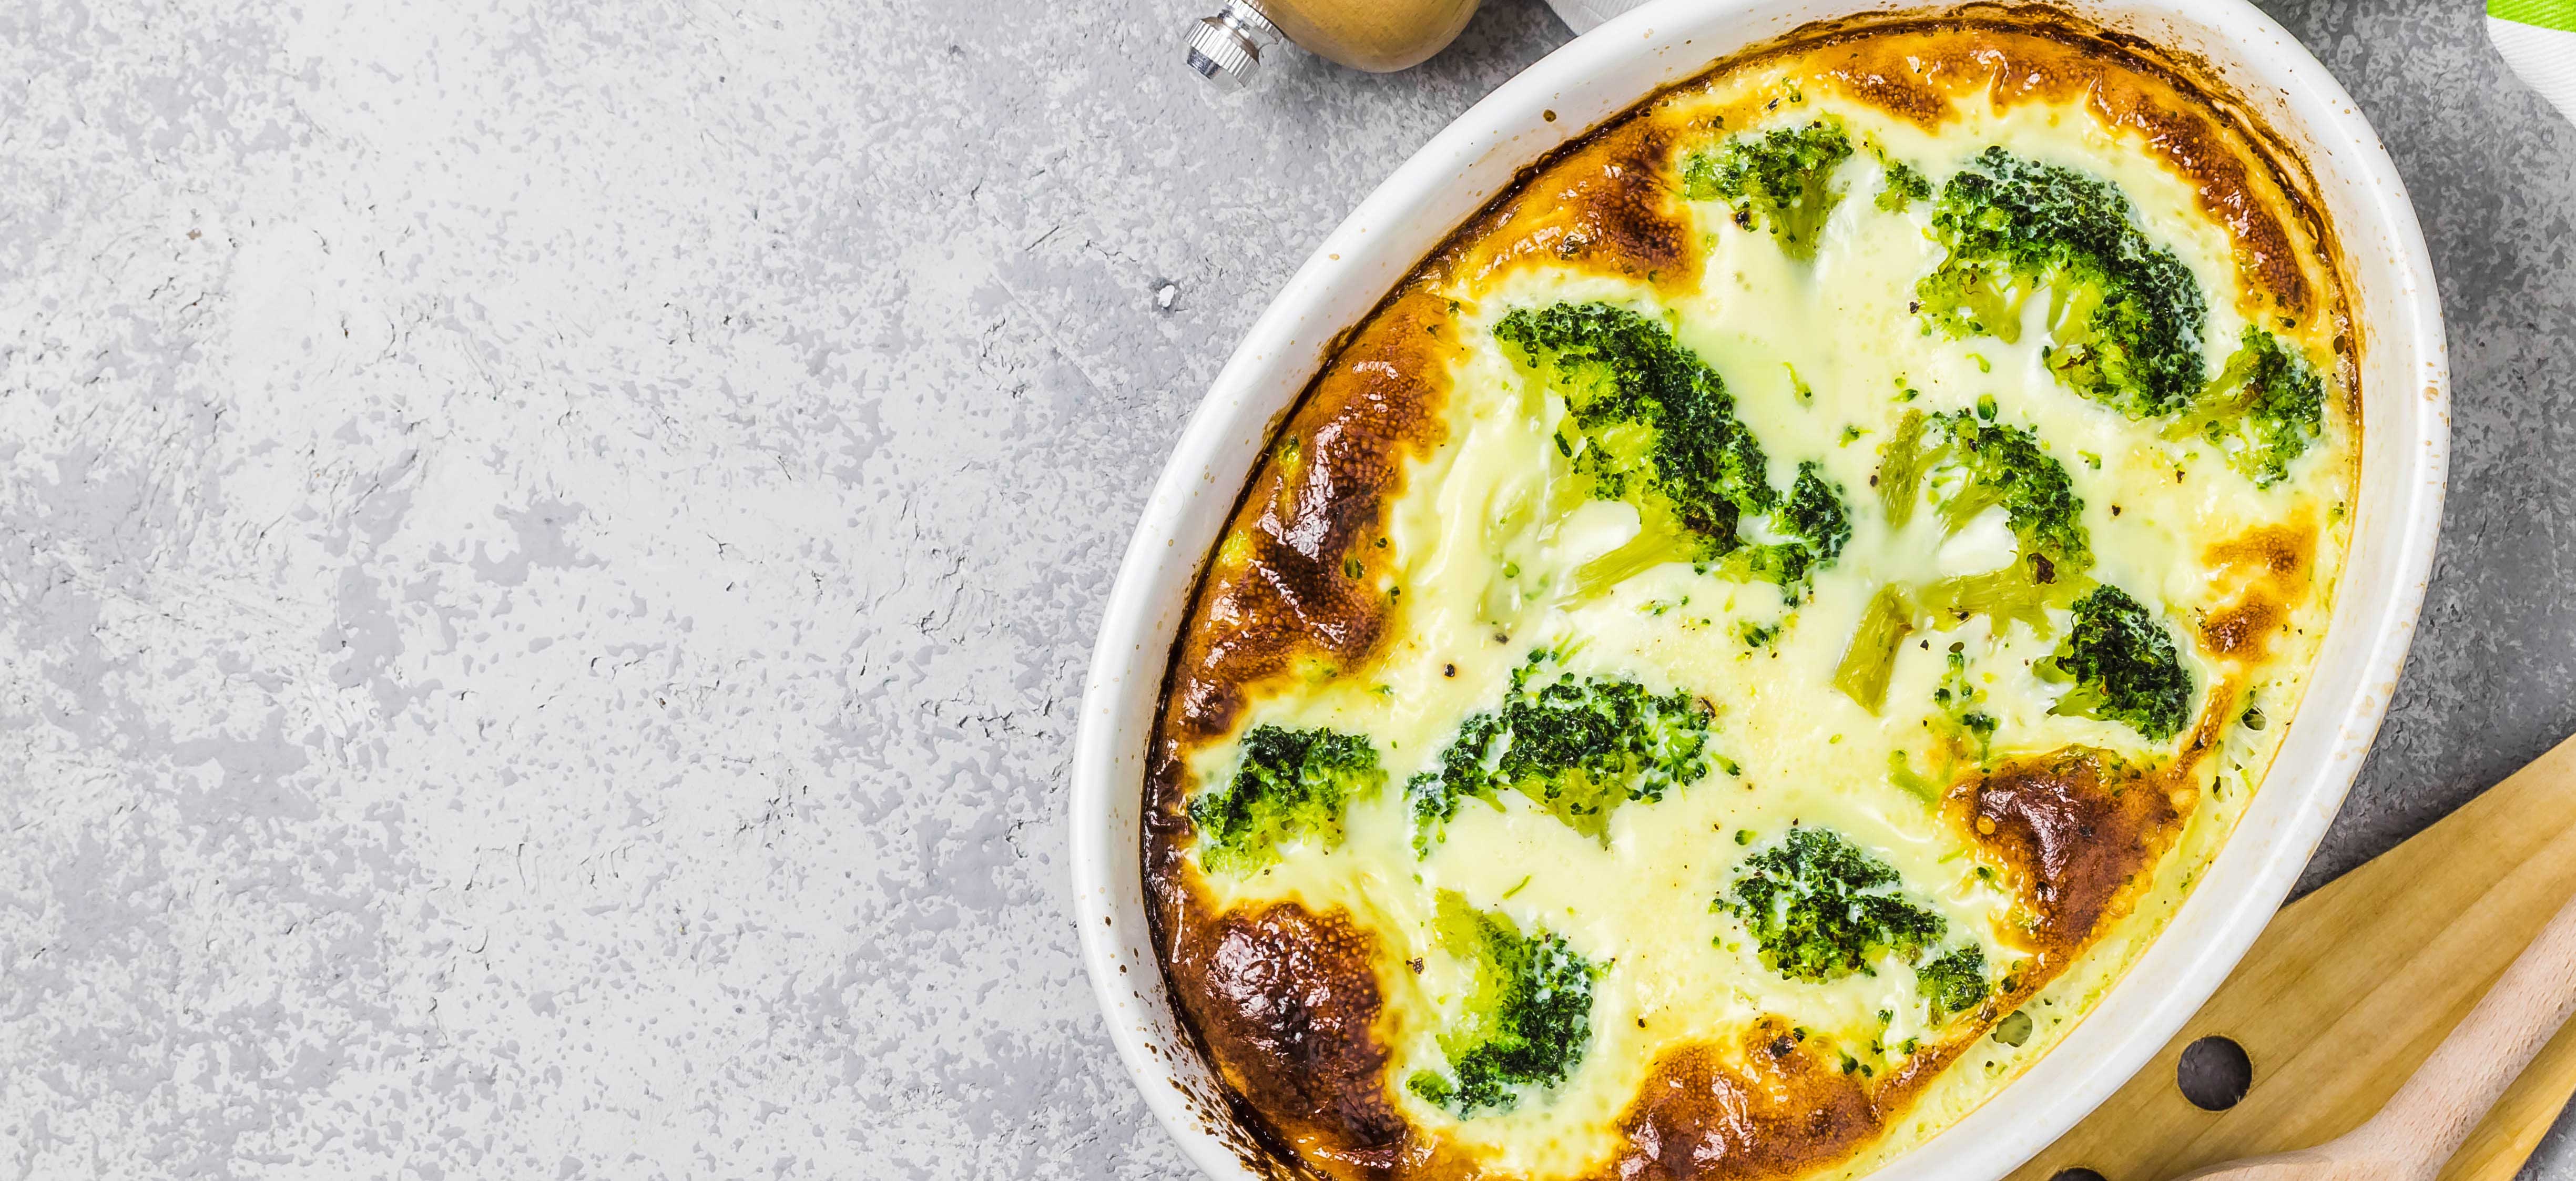 fout Succesvol trek de wol over de ogen Vegetarische aardappel broccoli ovenschotel - Diner | Eieiei